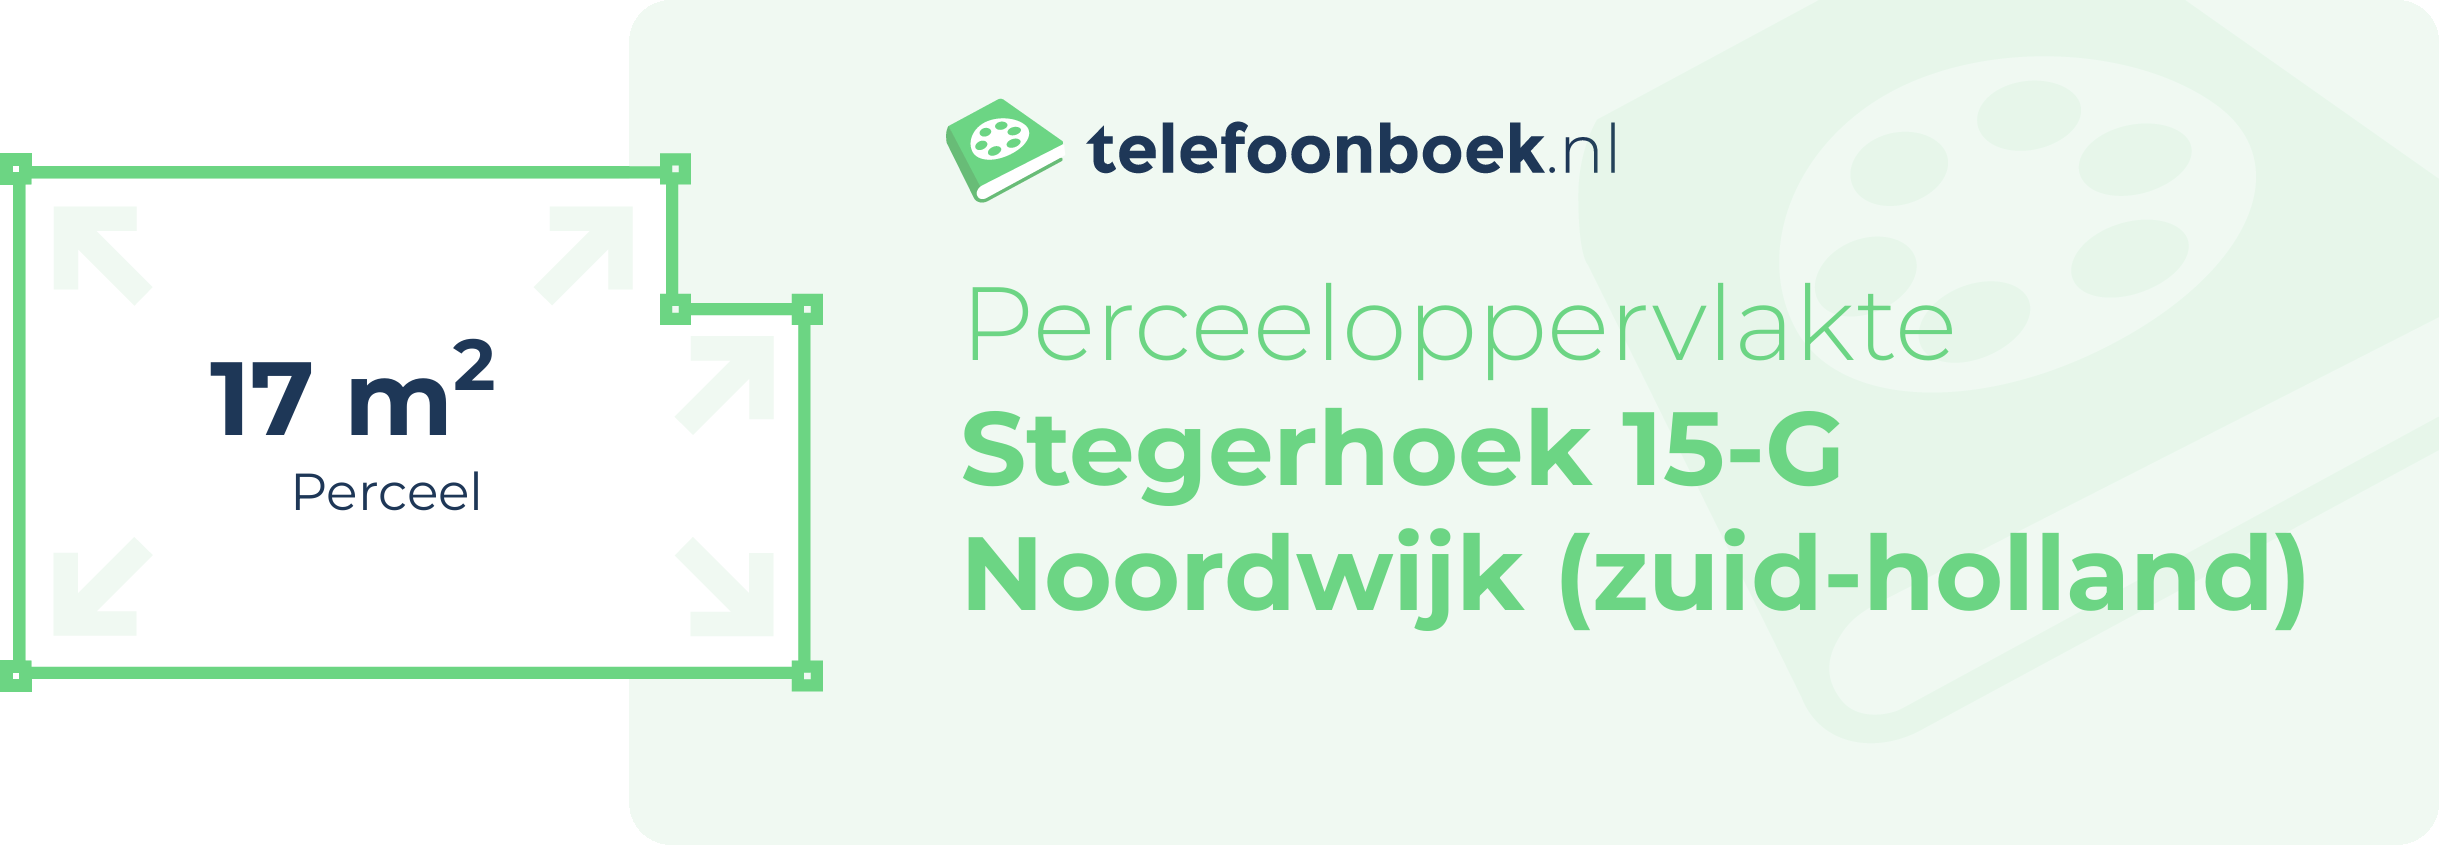 Perceeloppervlakte Stegerhoek 15-G Noordwijk (Zuid-Holland)